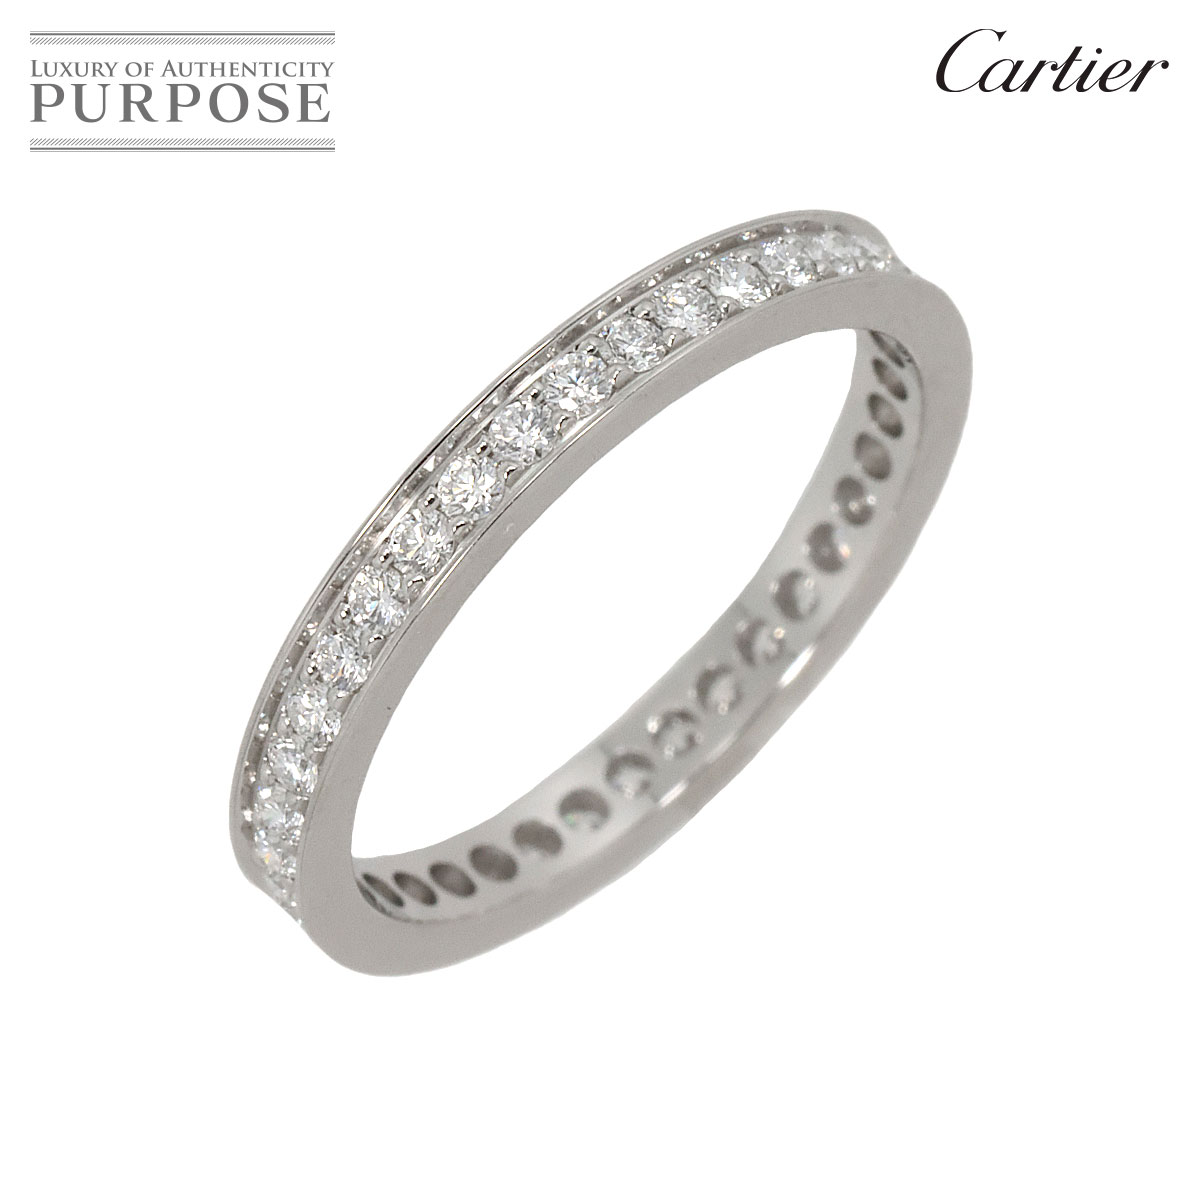 【新品同様】 カルティエ Cartier バレリーナ 50 リング ダイヤ Pt プラチナ 指輪 フルエタニティ Diamond Ring【証明書付き】【中古】